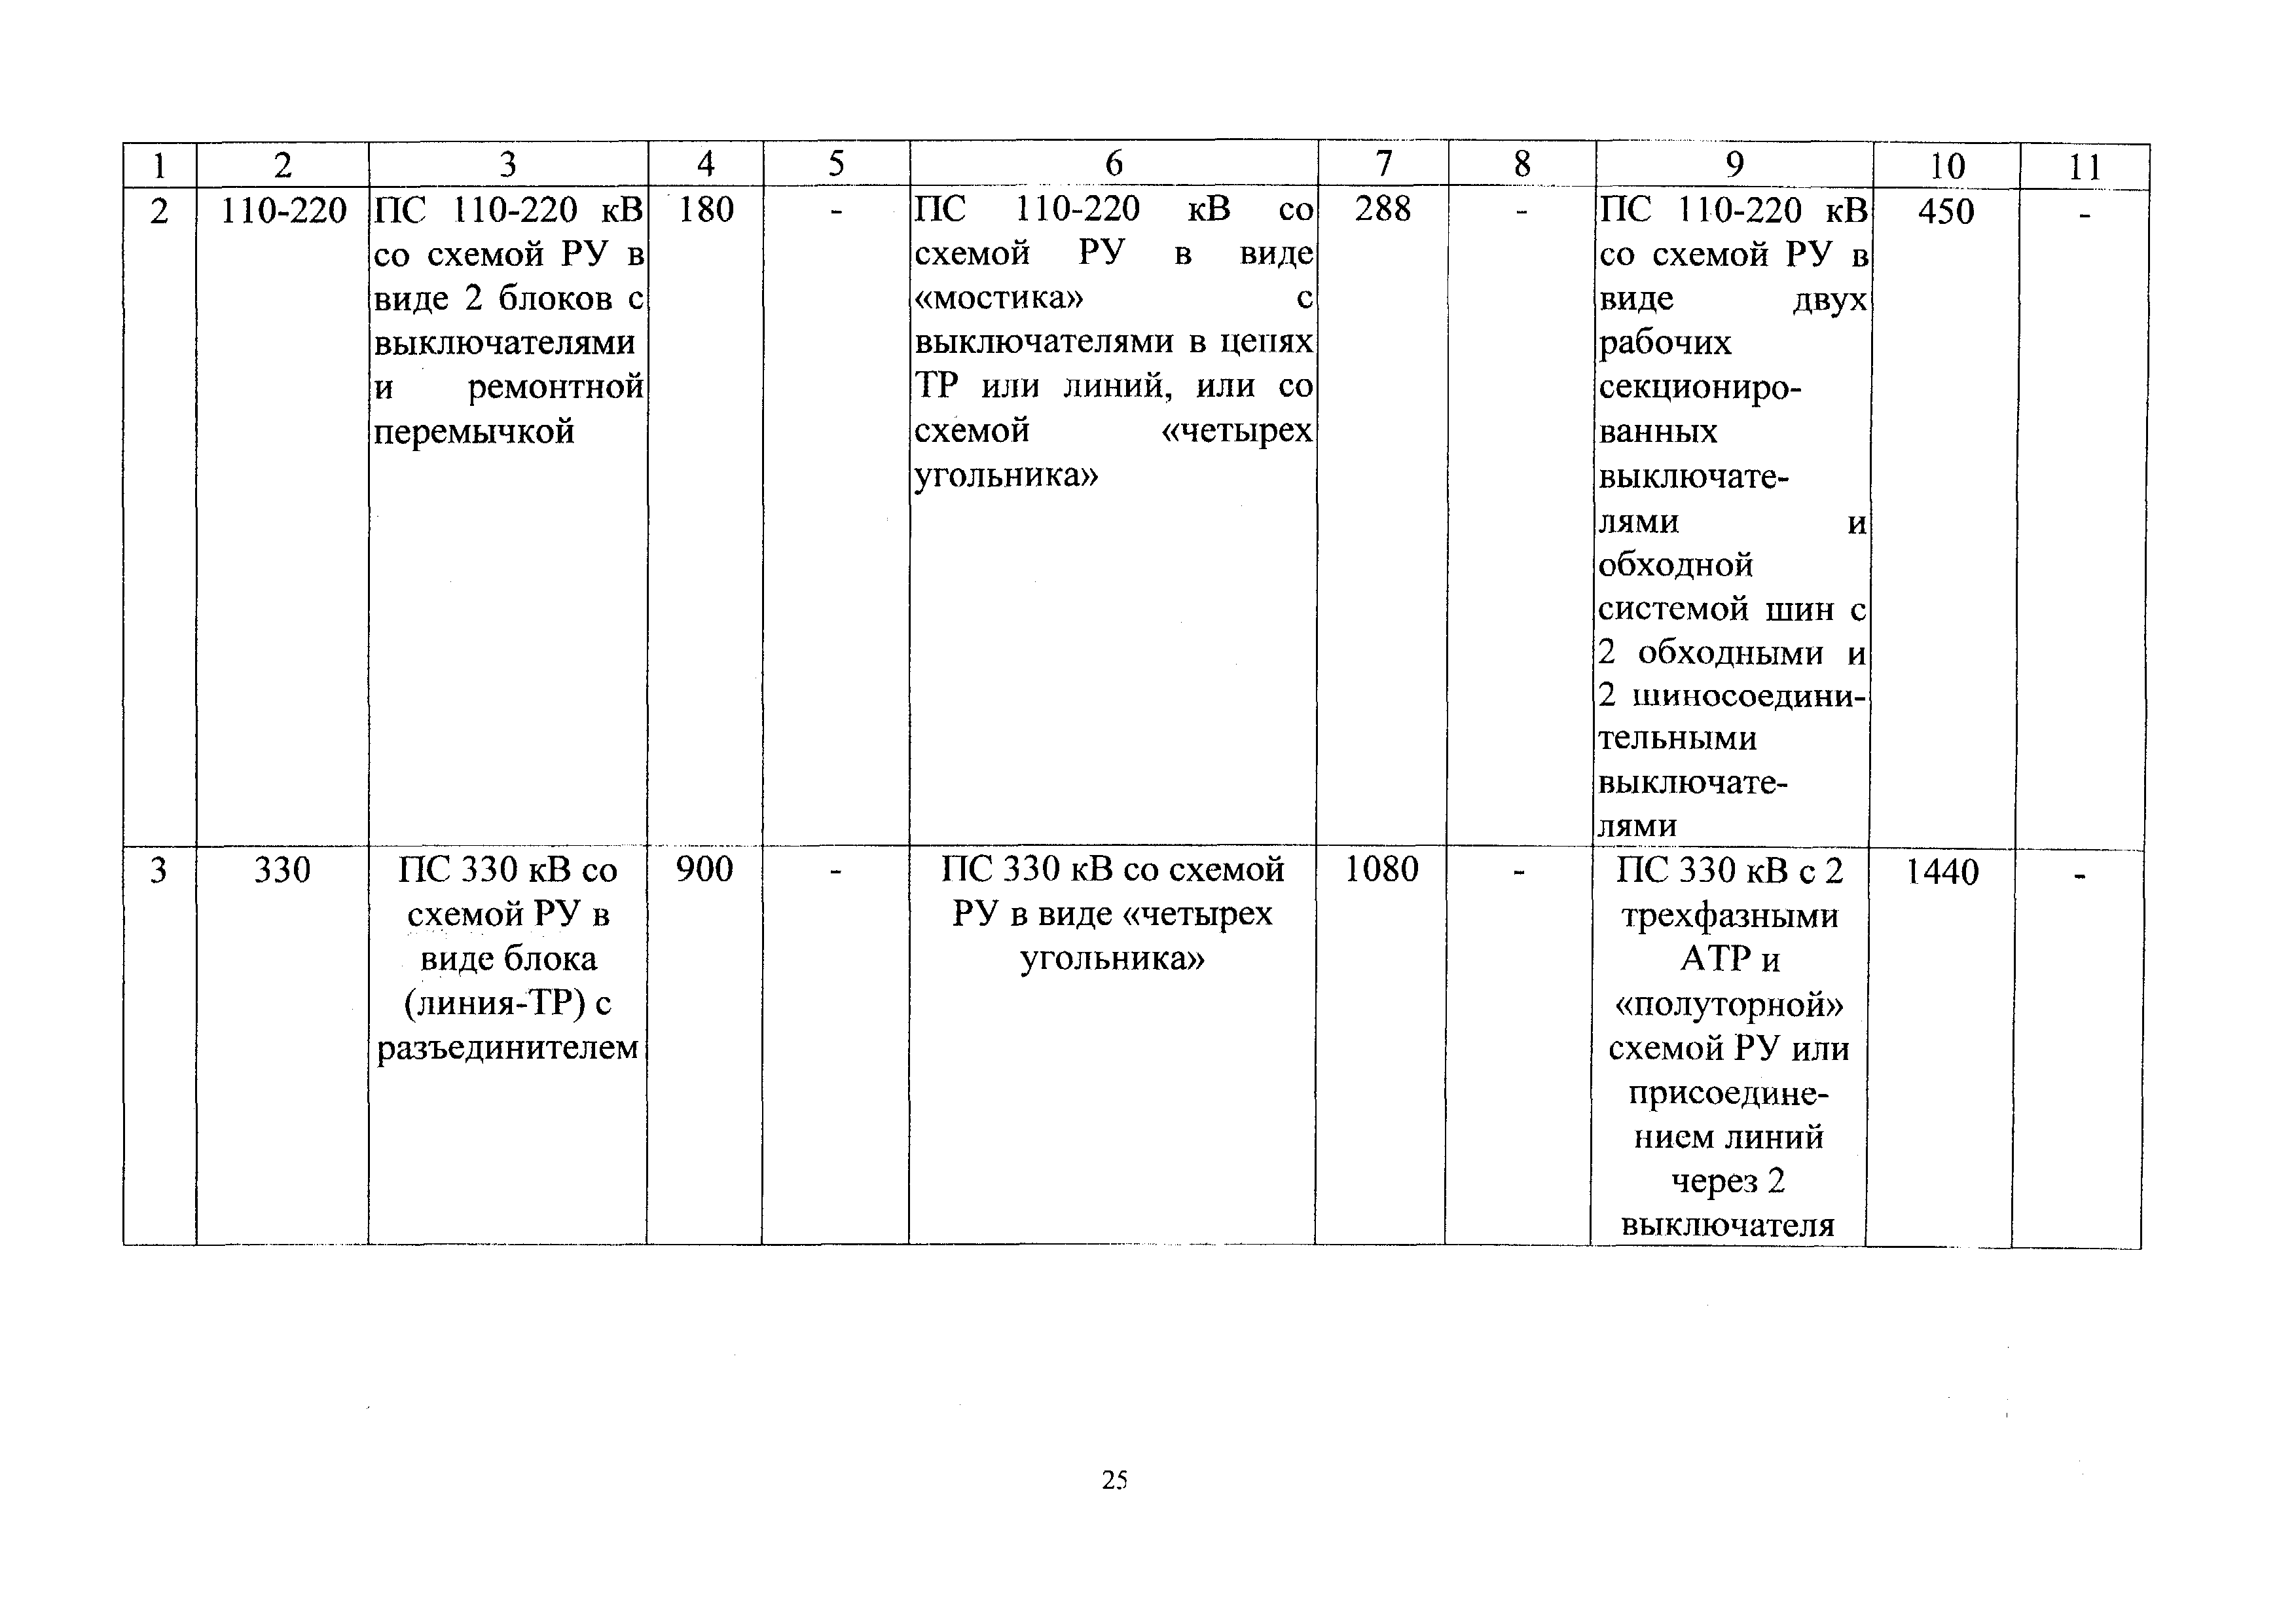 СБЦП 81-2001-24